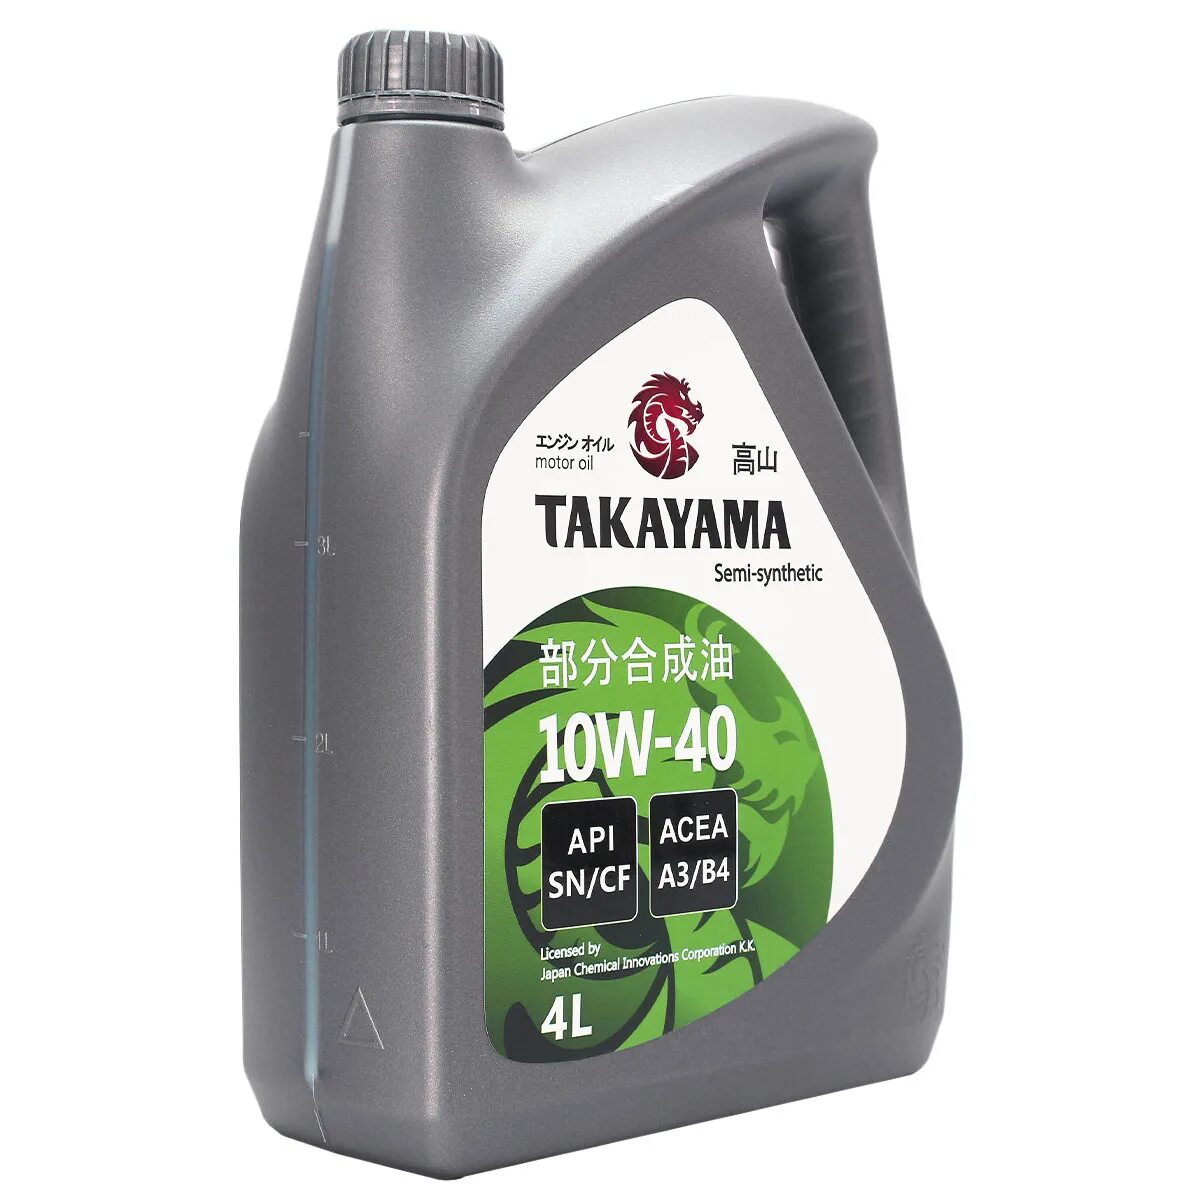 Масло моторное Takayama 10w-40 API SN/CF 4л (пластик). Масло Такаяма 10w 40. Масло Такаяма 10w 40 отзывы. Takayama 10w 40 полусинтетика отзывы. Масло такаяма 10w